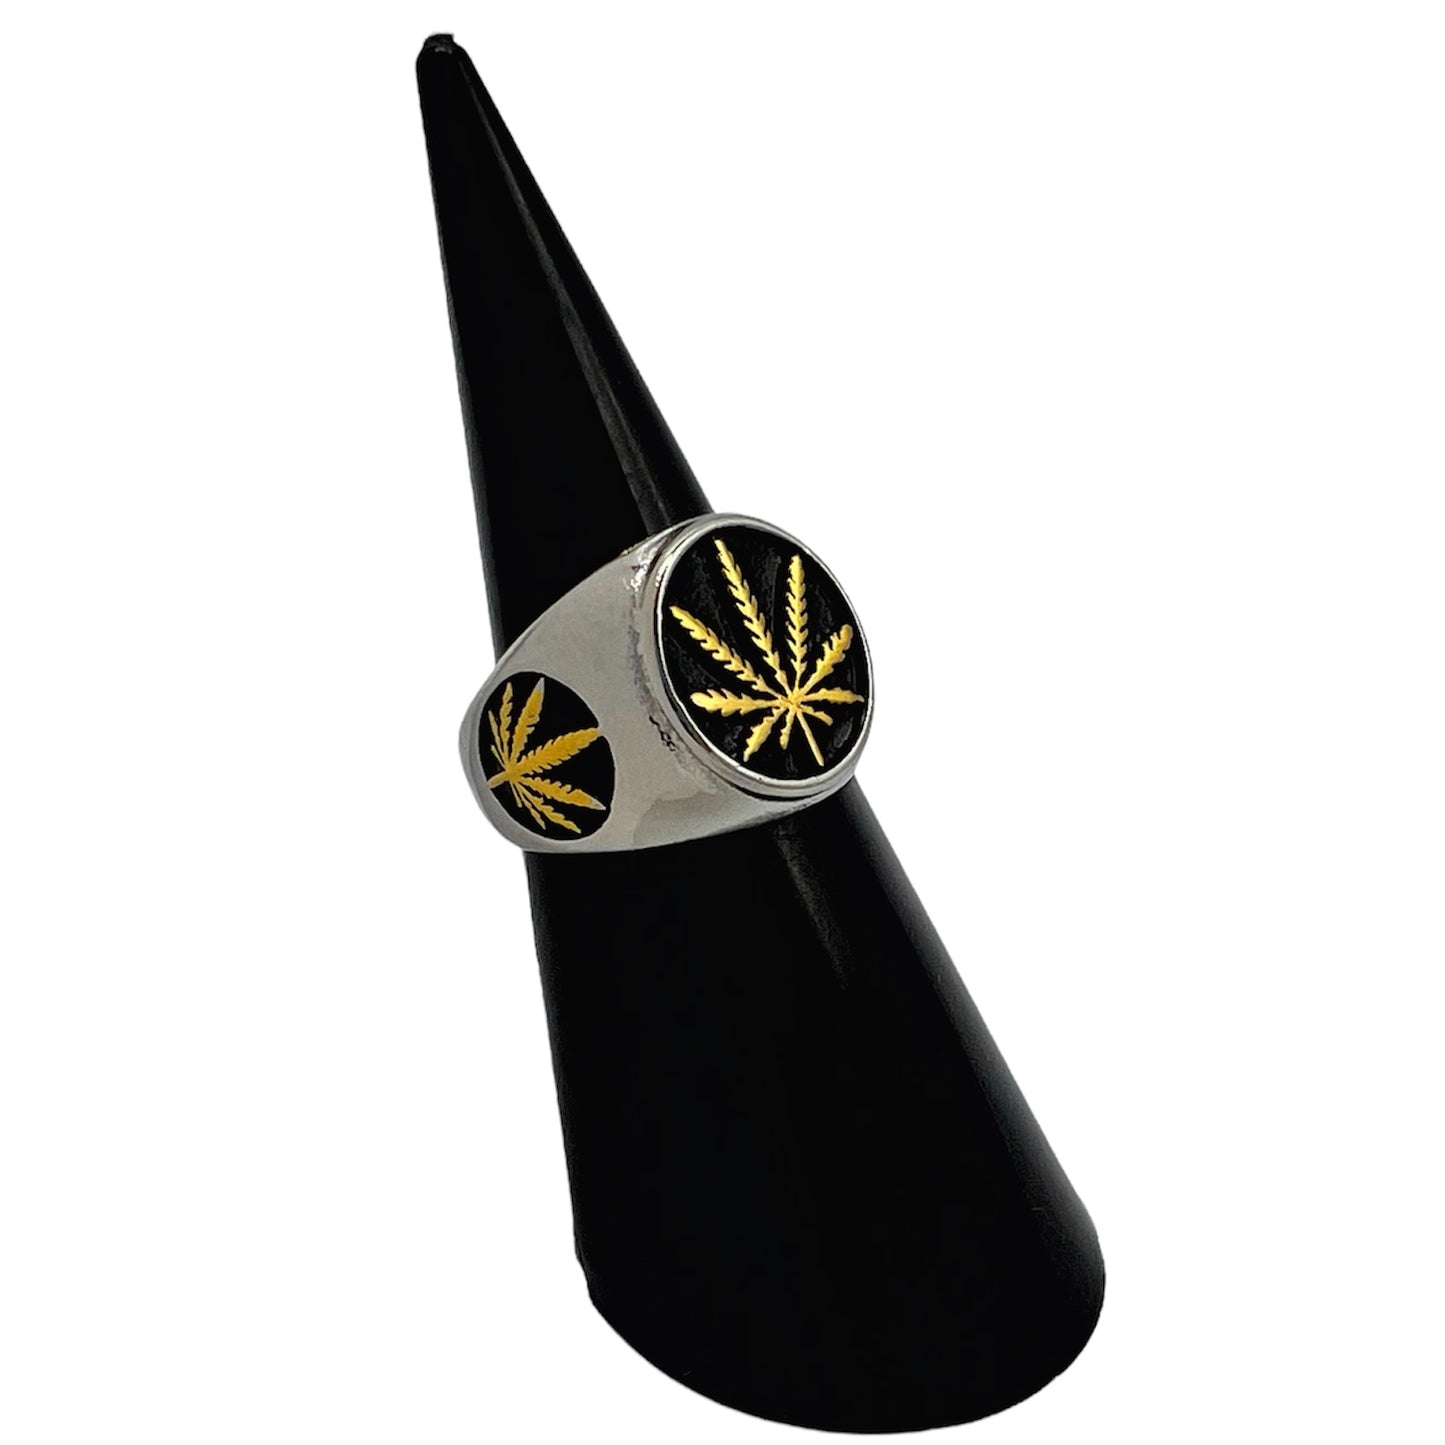 R-38 Stainless Steel Anillo con Hoja de Marihuana/ Marijuana Leaf Ring, Color: Silver,Gold,Black, Seleccione el Size en la Parte de Abajo donde dice Size